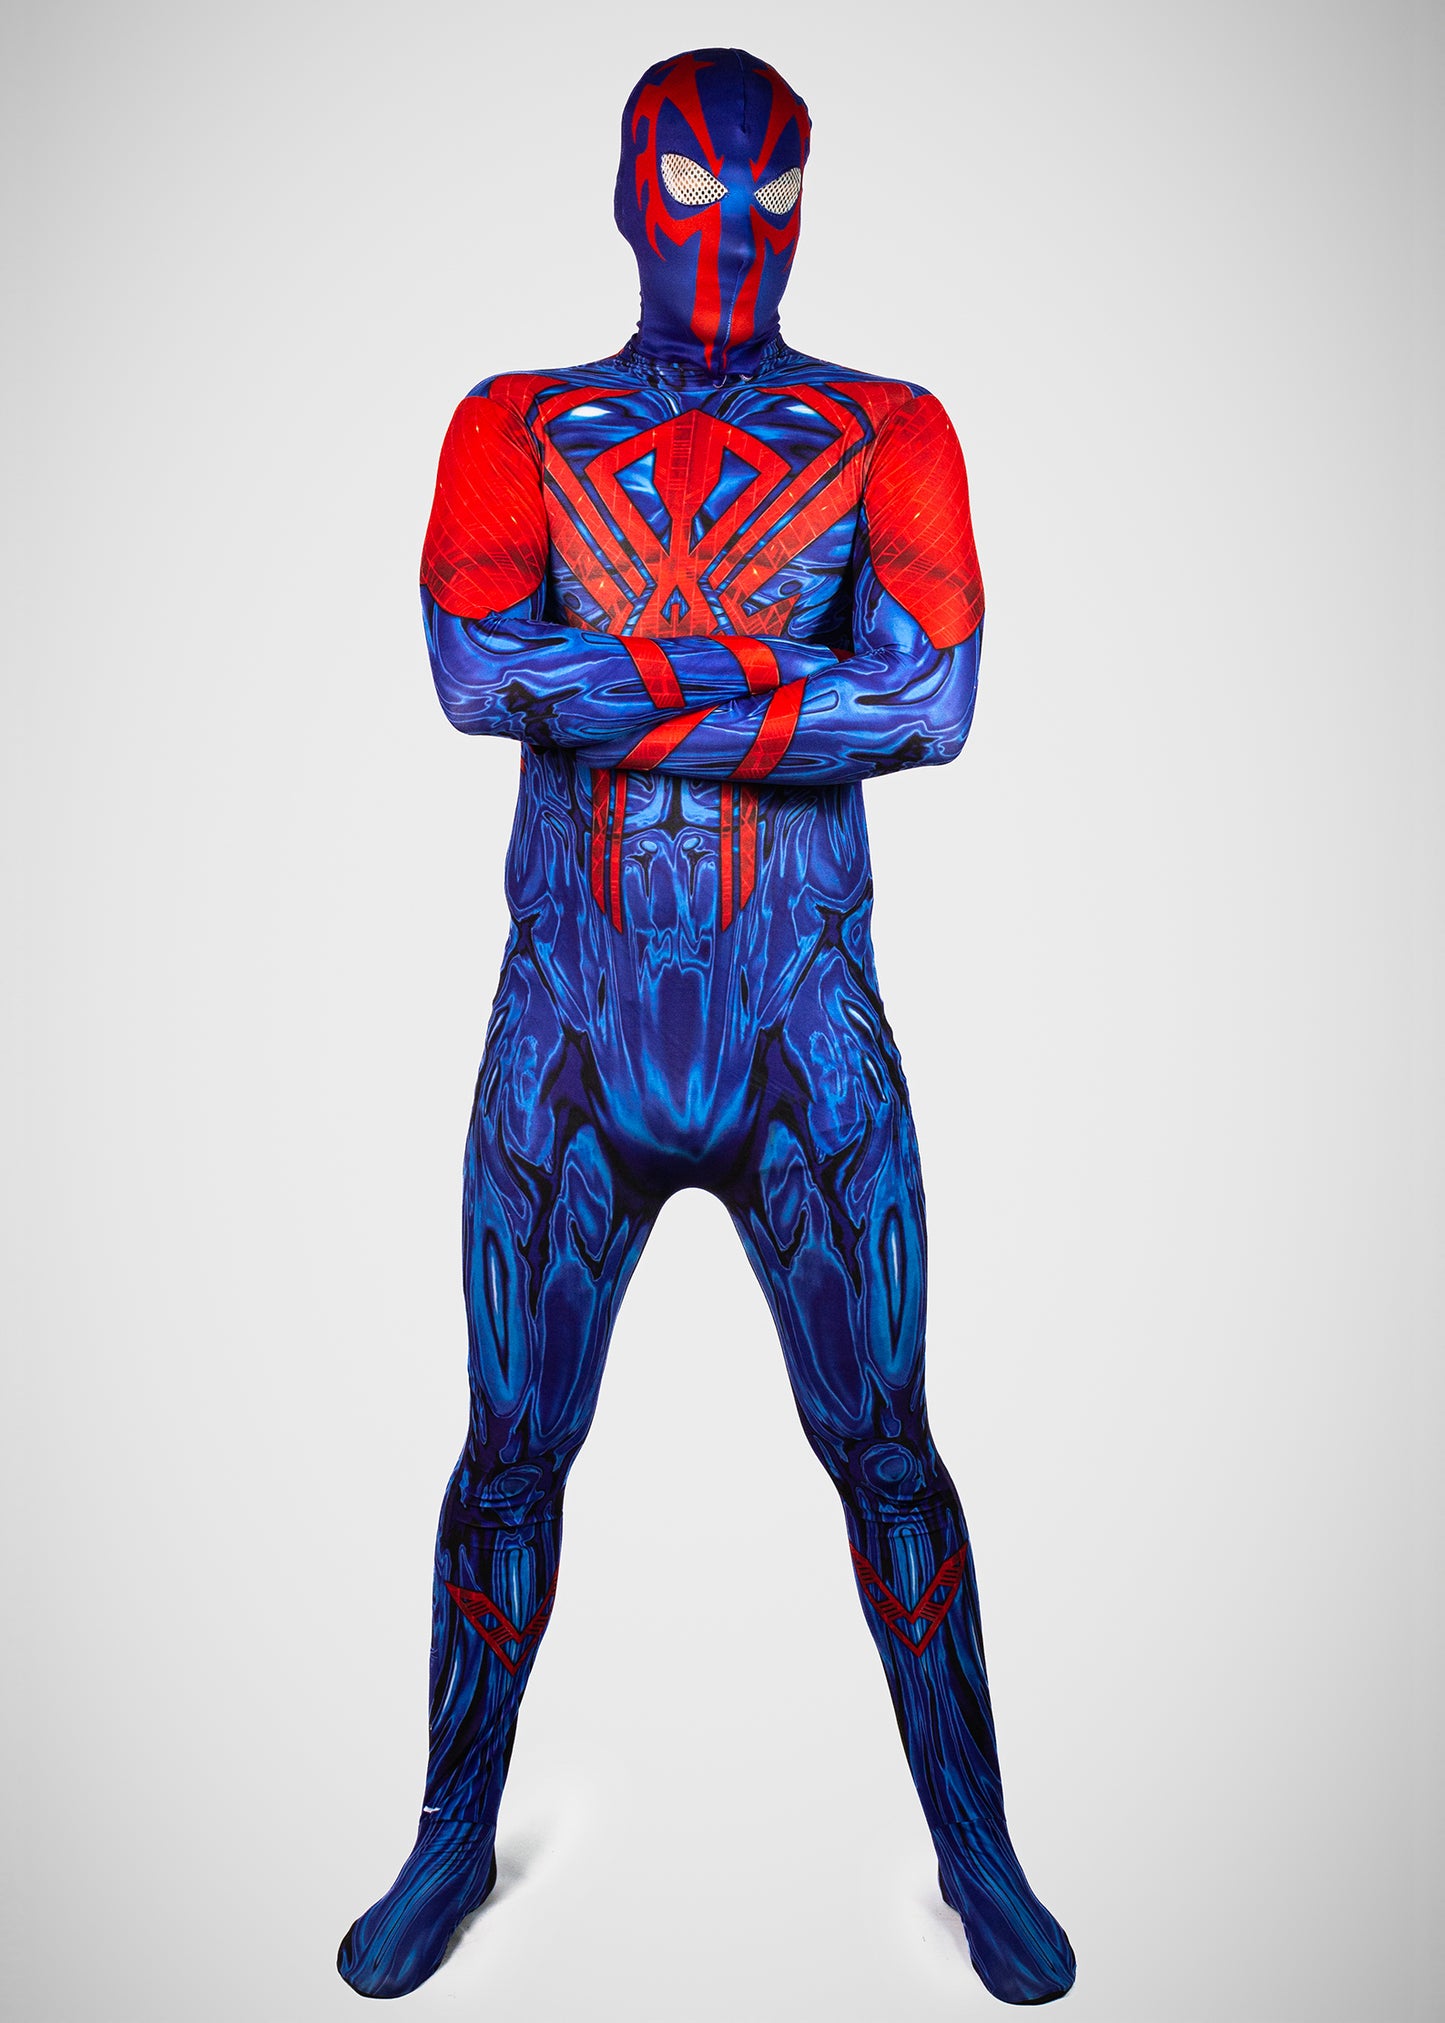 Spiderman 2099 Miguel Ohara